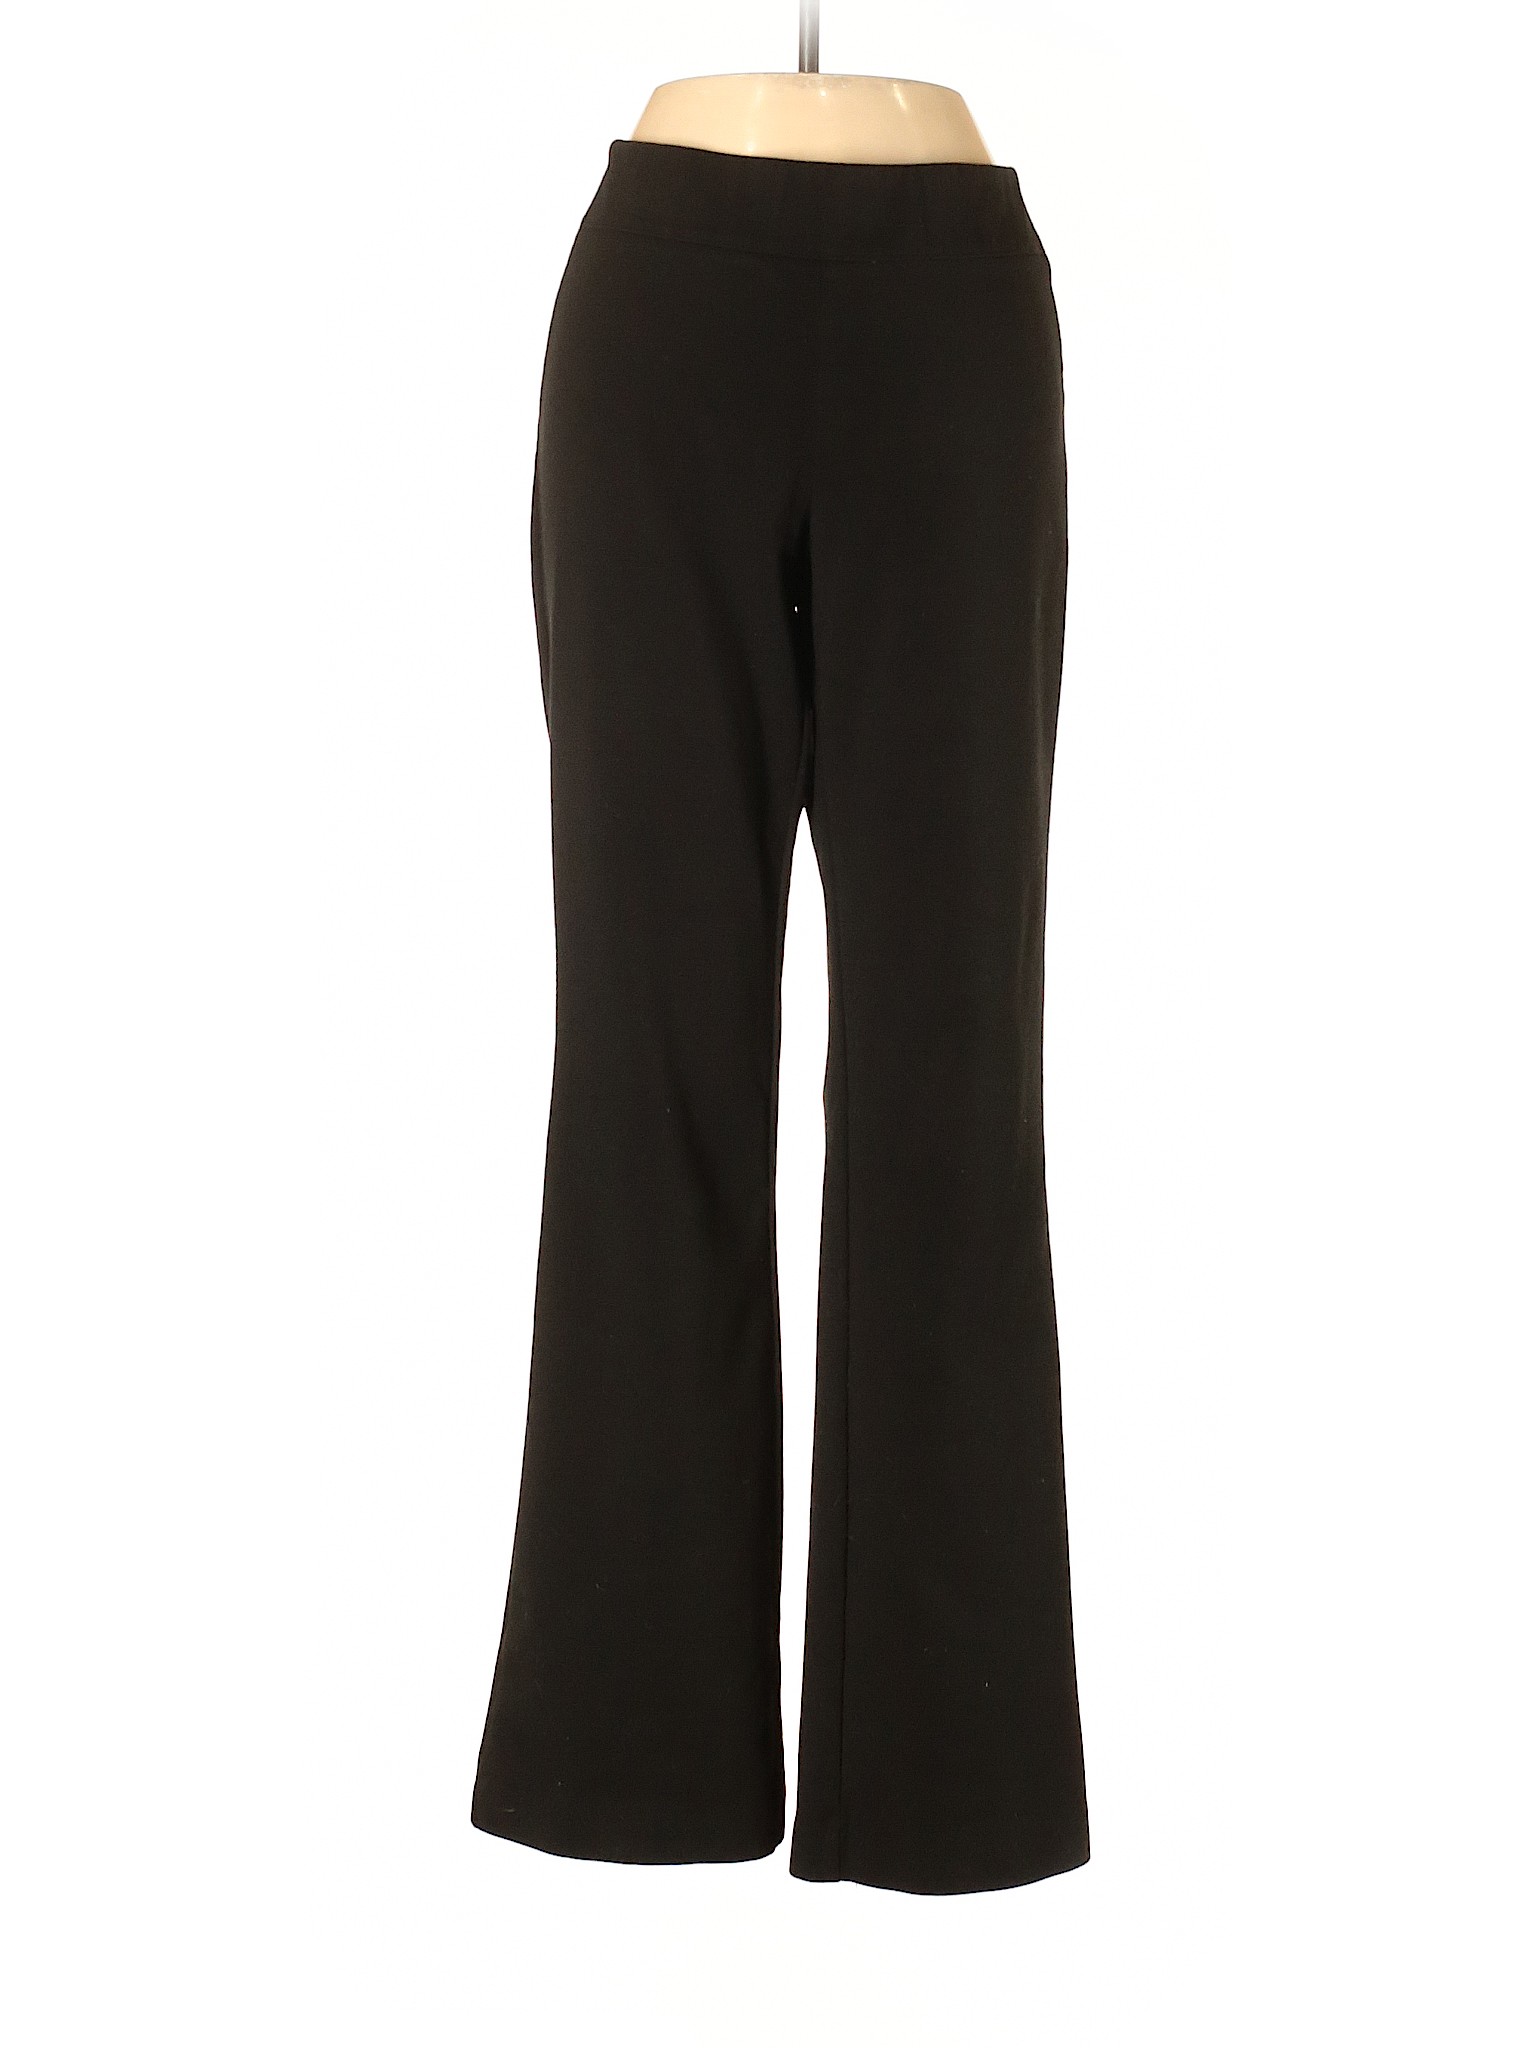 Simply Vera Vera Wang Women Black Casual Pants S | eBay